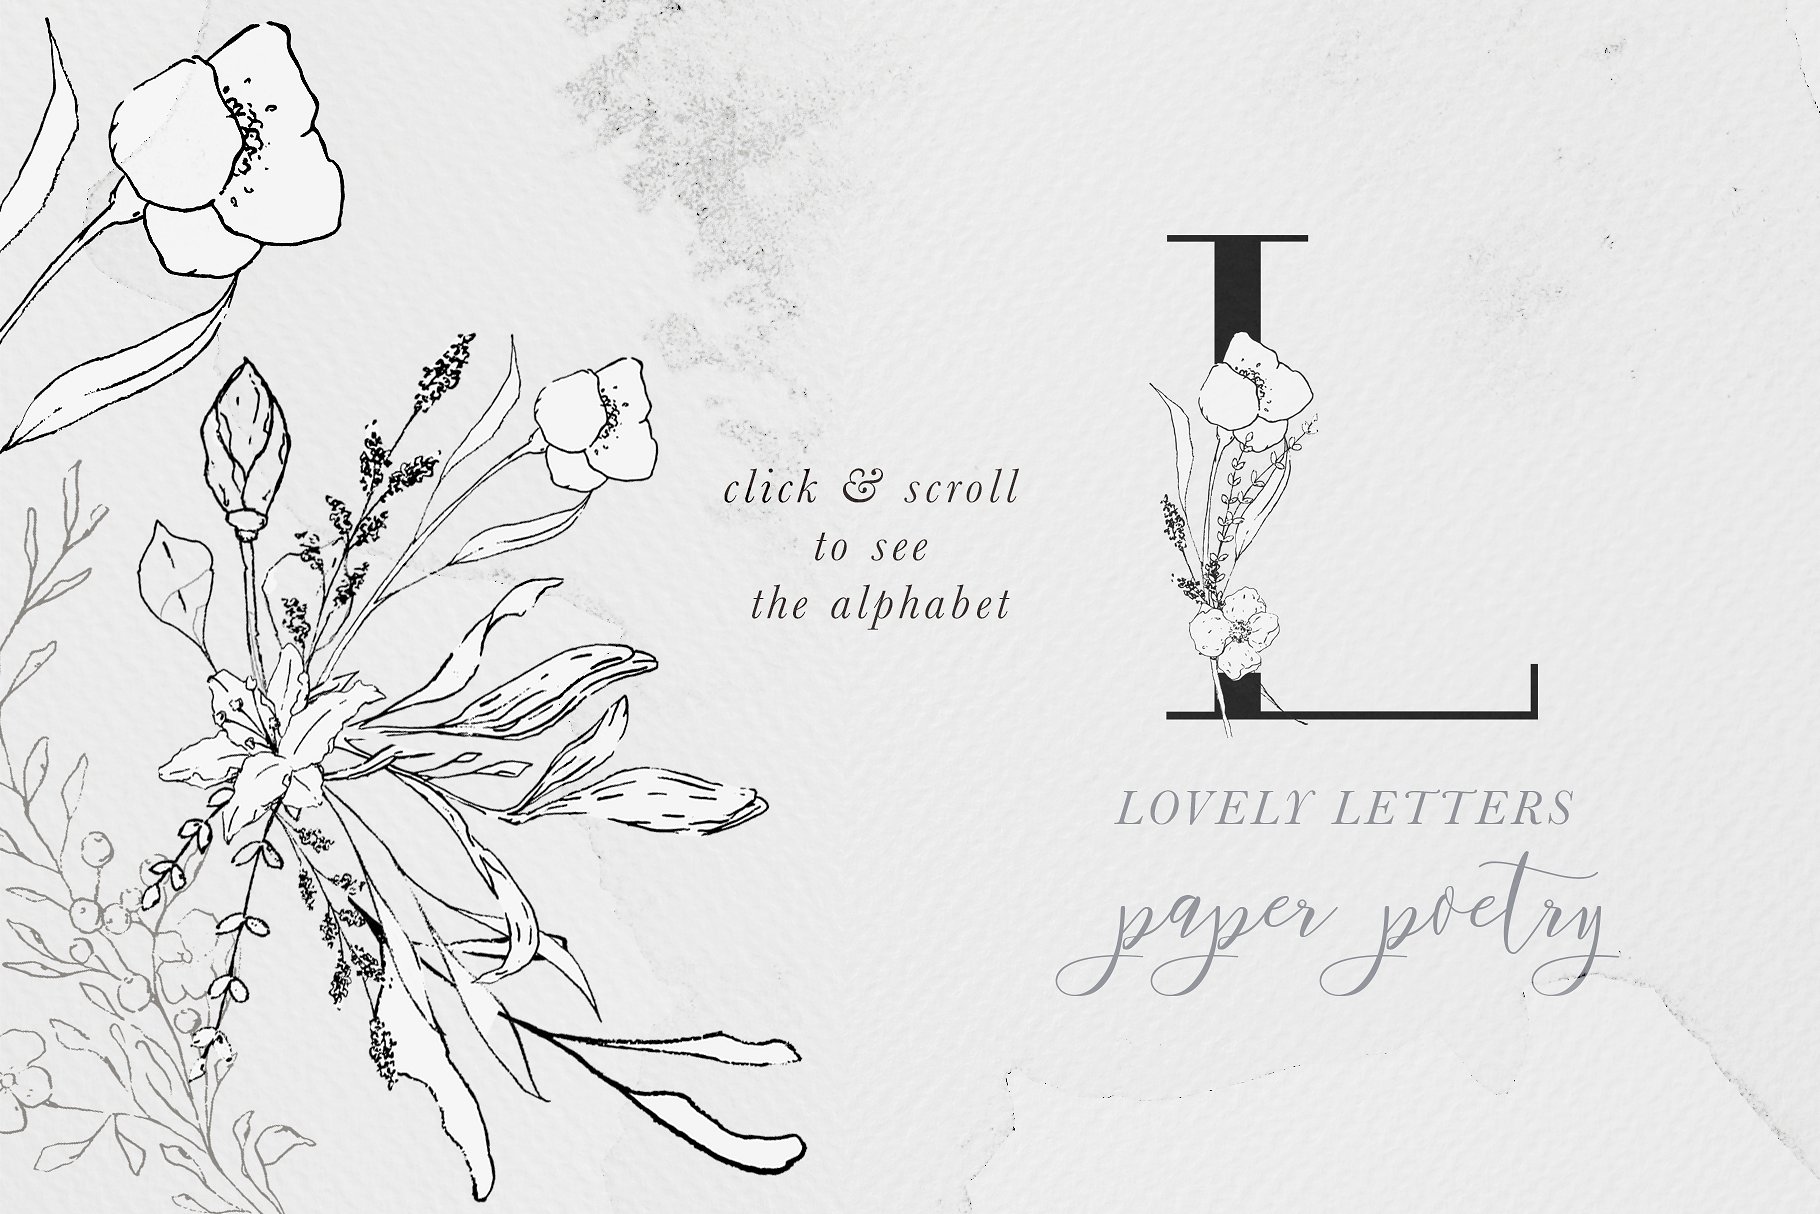 优雅风格手绘花卉插图&字母素材 Floral Alphabet & Illustrations插图(2)